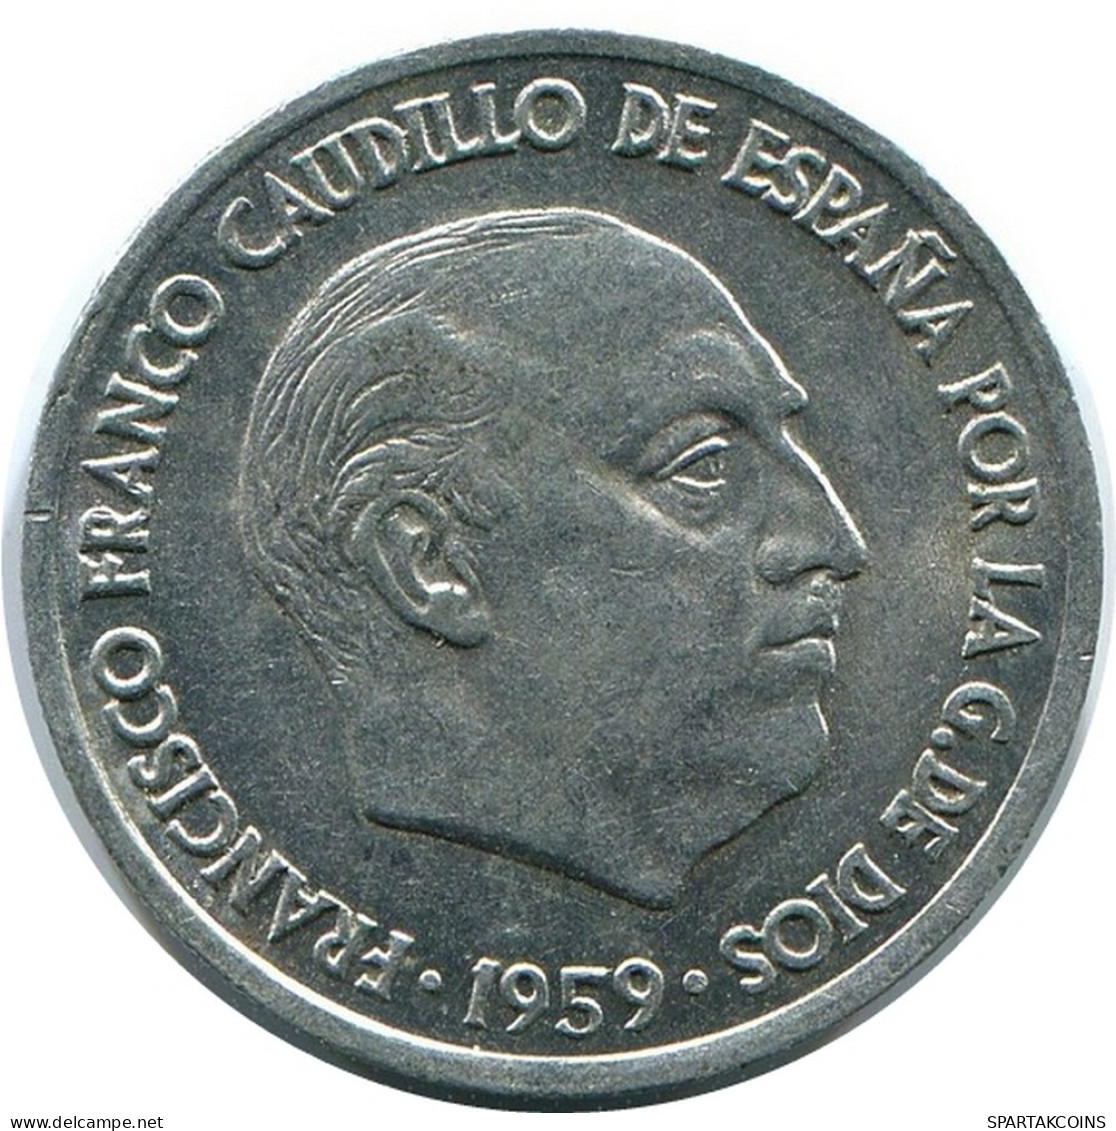 10 CENTIMOS 1959 SPAIN Coin #AR176.U - 10 Centimos